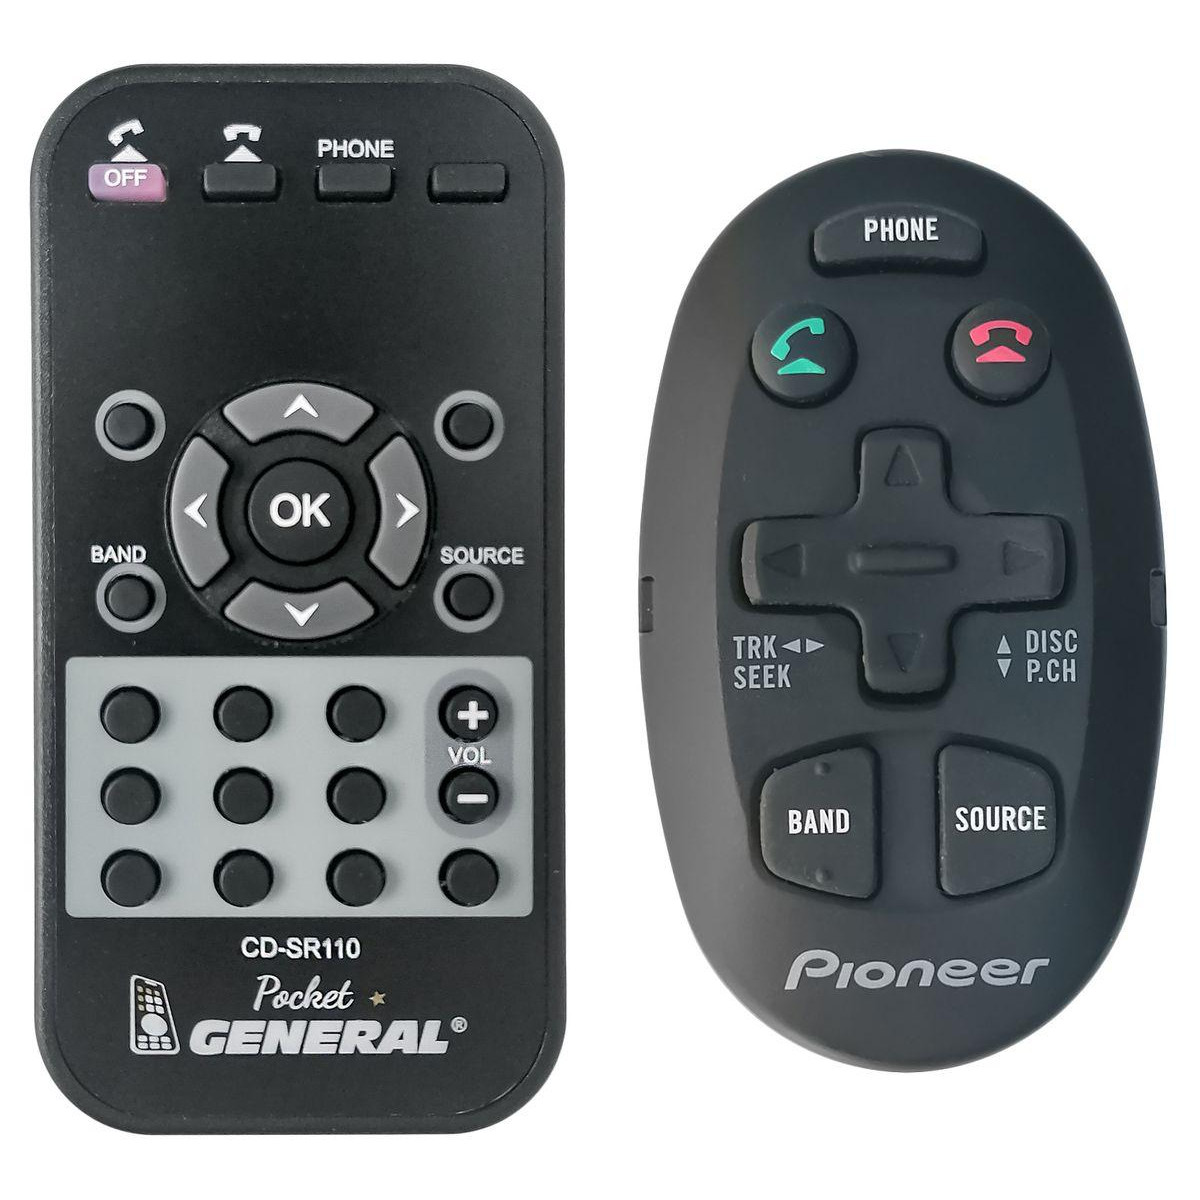 PIONEER CD-SR110 - dálkový ovladač, duplikát kompatibilní